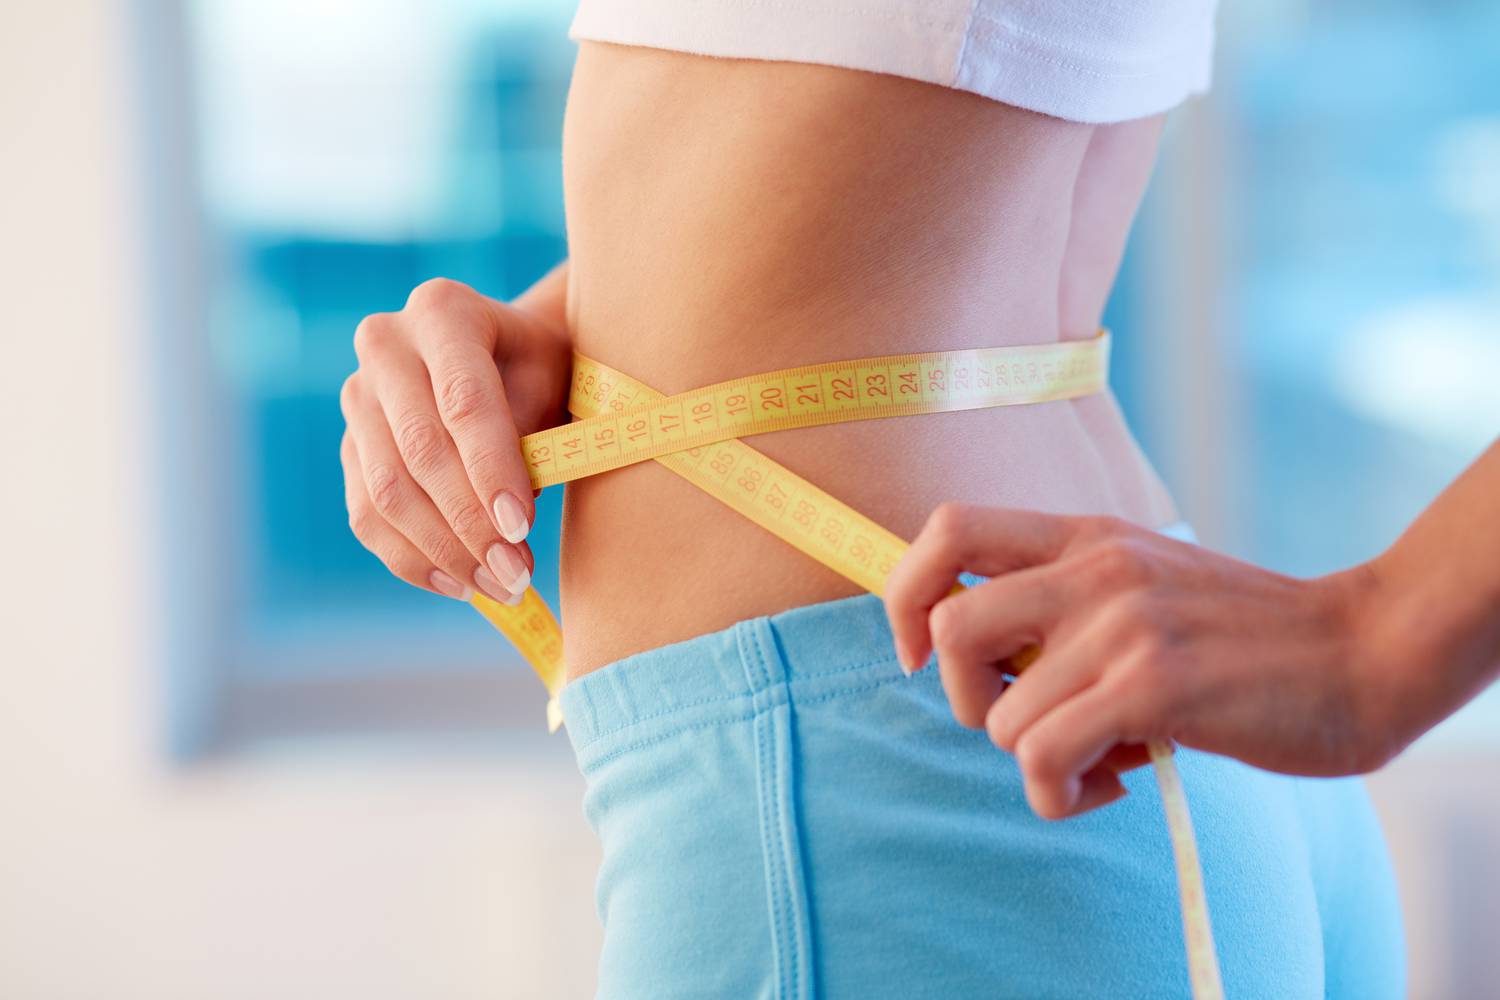 Bomba-diéta: 72 óra alatt 10 kilót is fogyhatsz!